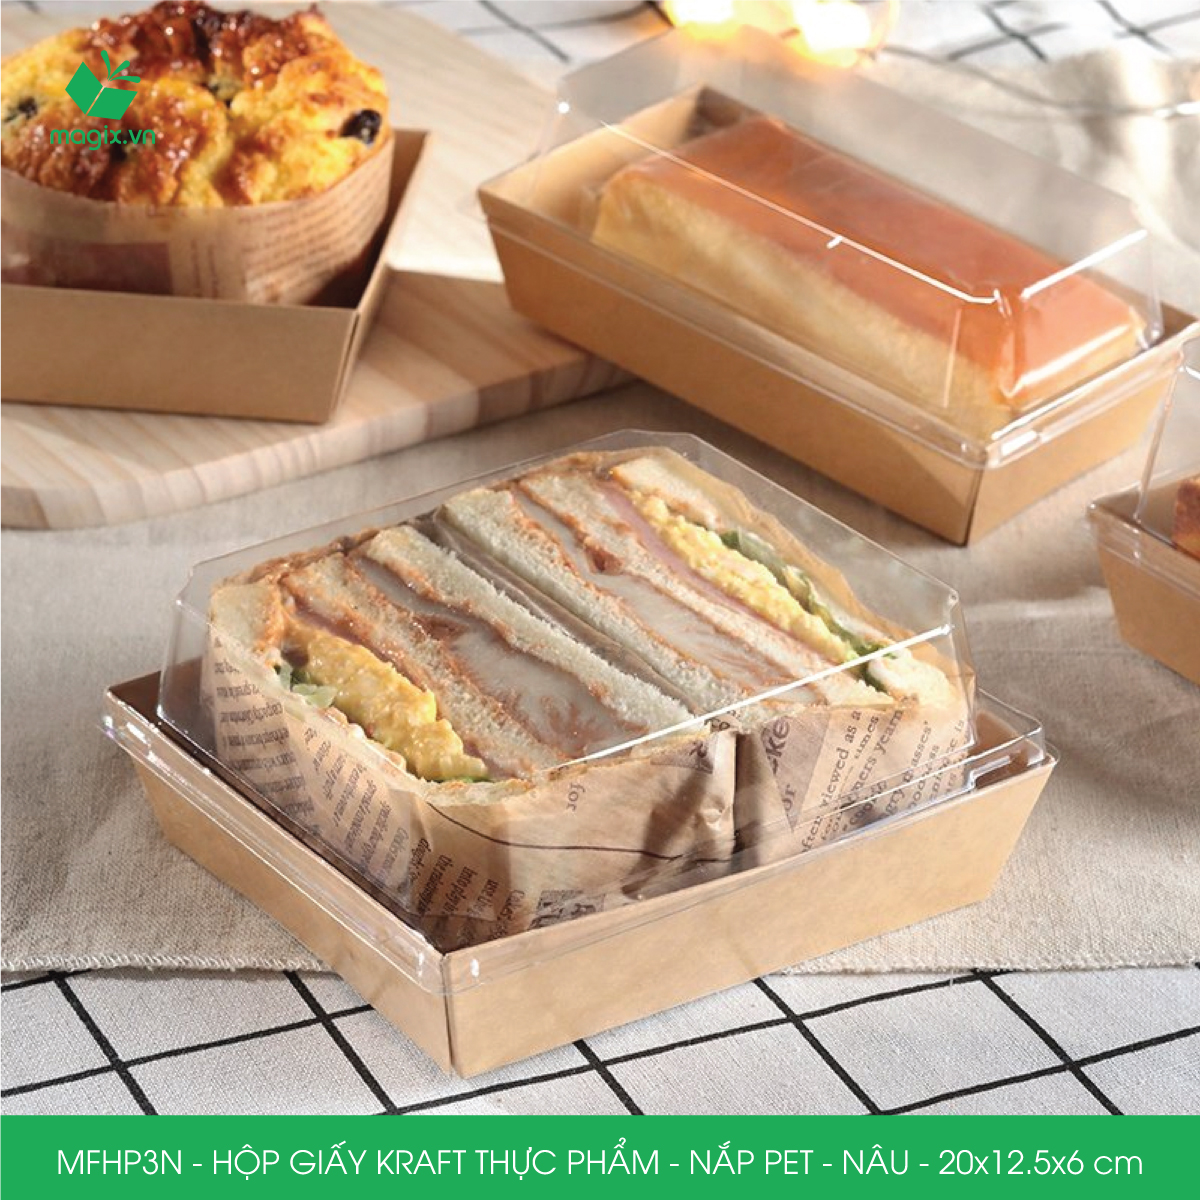 Hình ảnh MFHP3N - 20x12.5x6 cm - 25 hộp giấy kraft thực phẩm màu nâu nắp Pet, hộp giấy chữ nhật đựng thức ăn, hộp bánh nắp trong